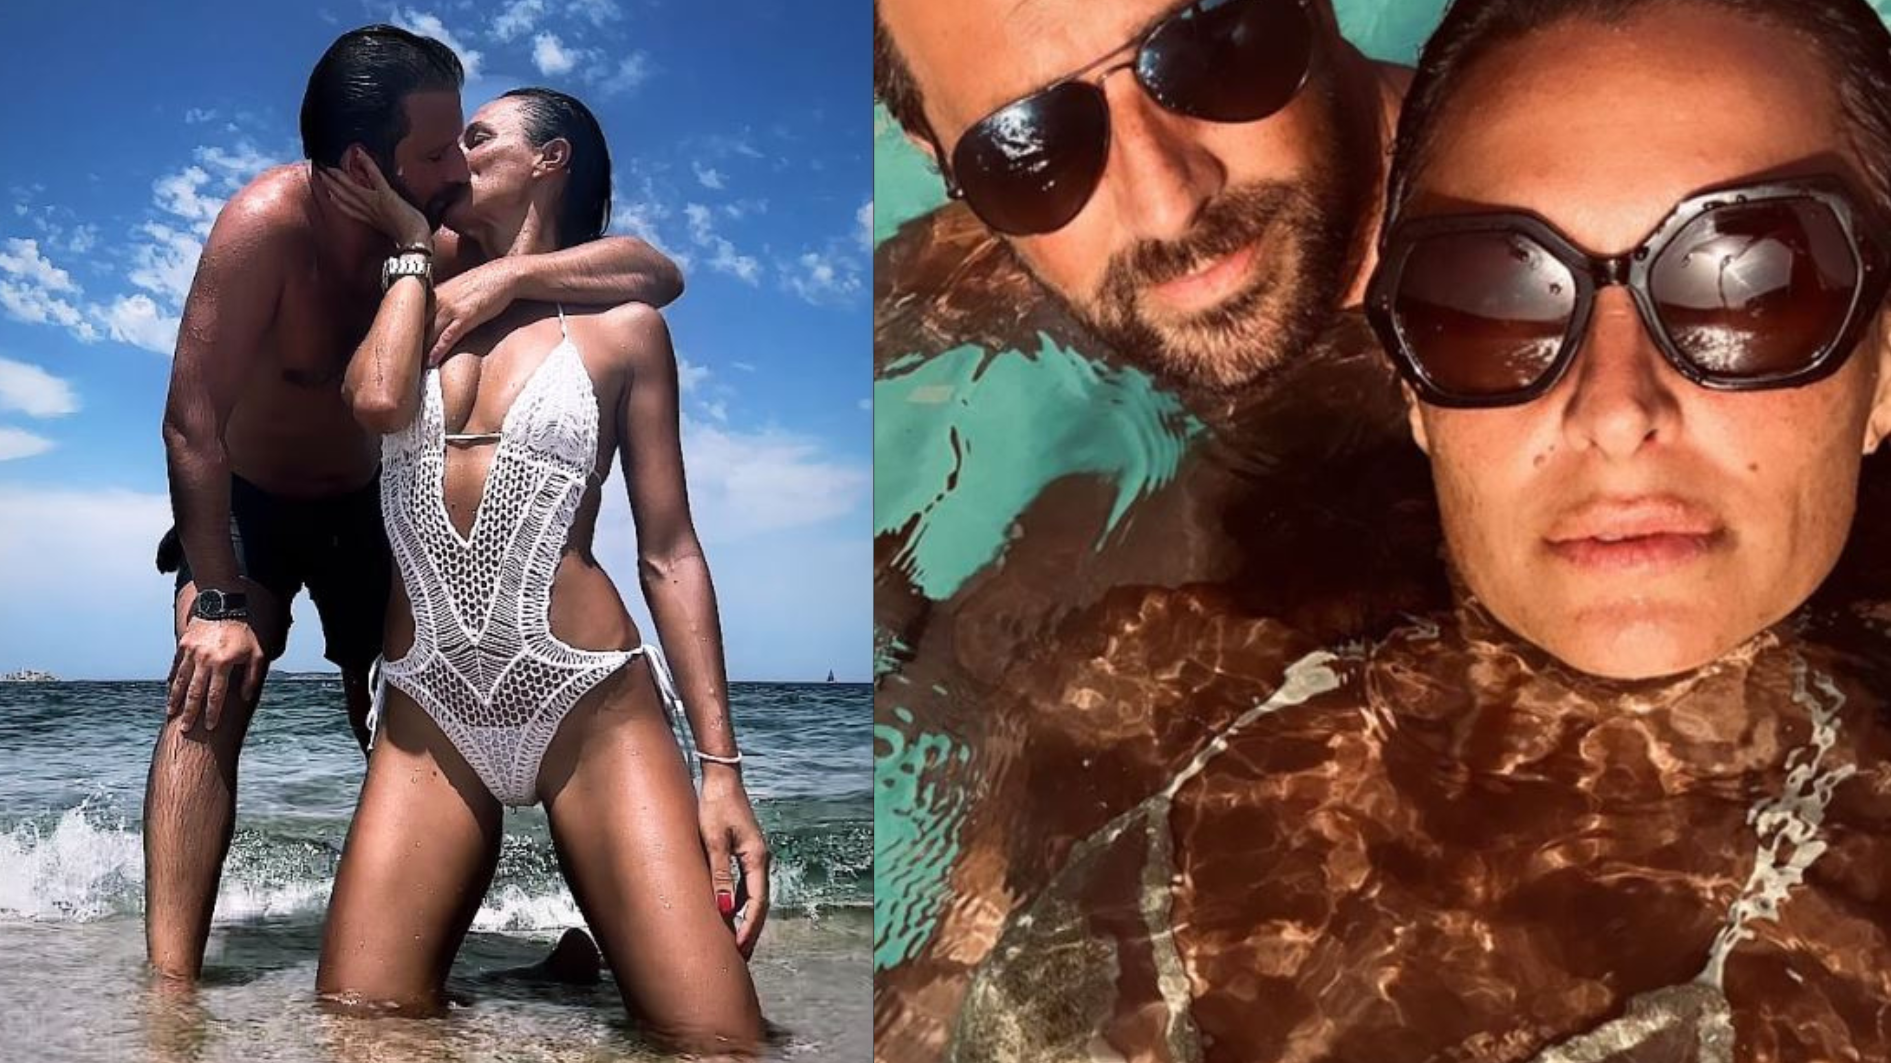 Die Beziehung zwischen Georg Dornauer und Alessia Ambrosi schlägt hohe Wellen. (Bild: Instagram)